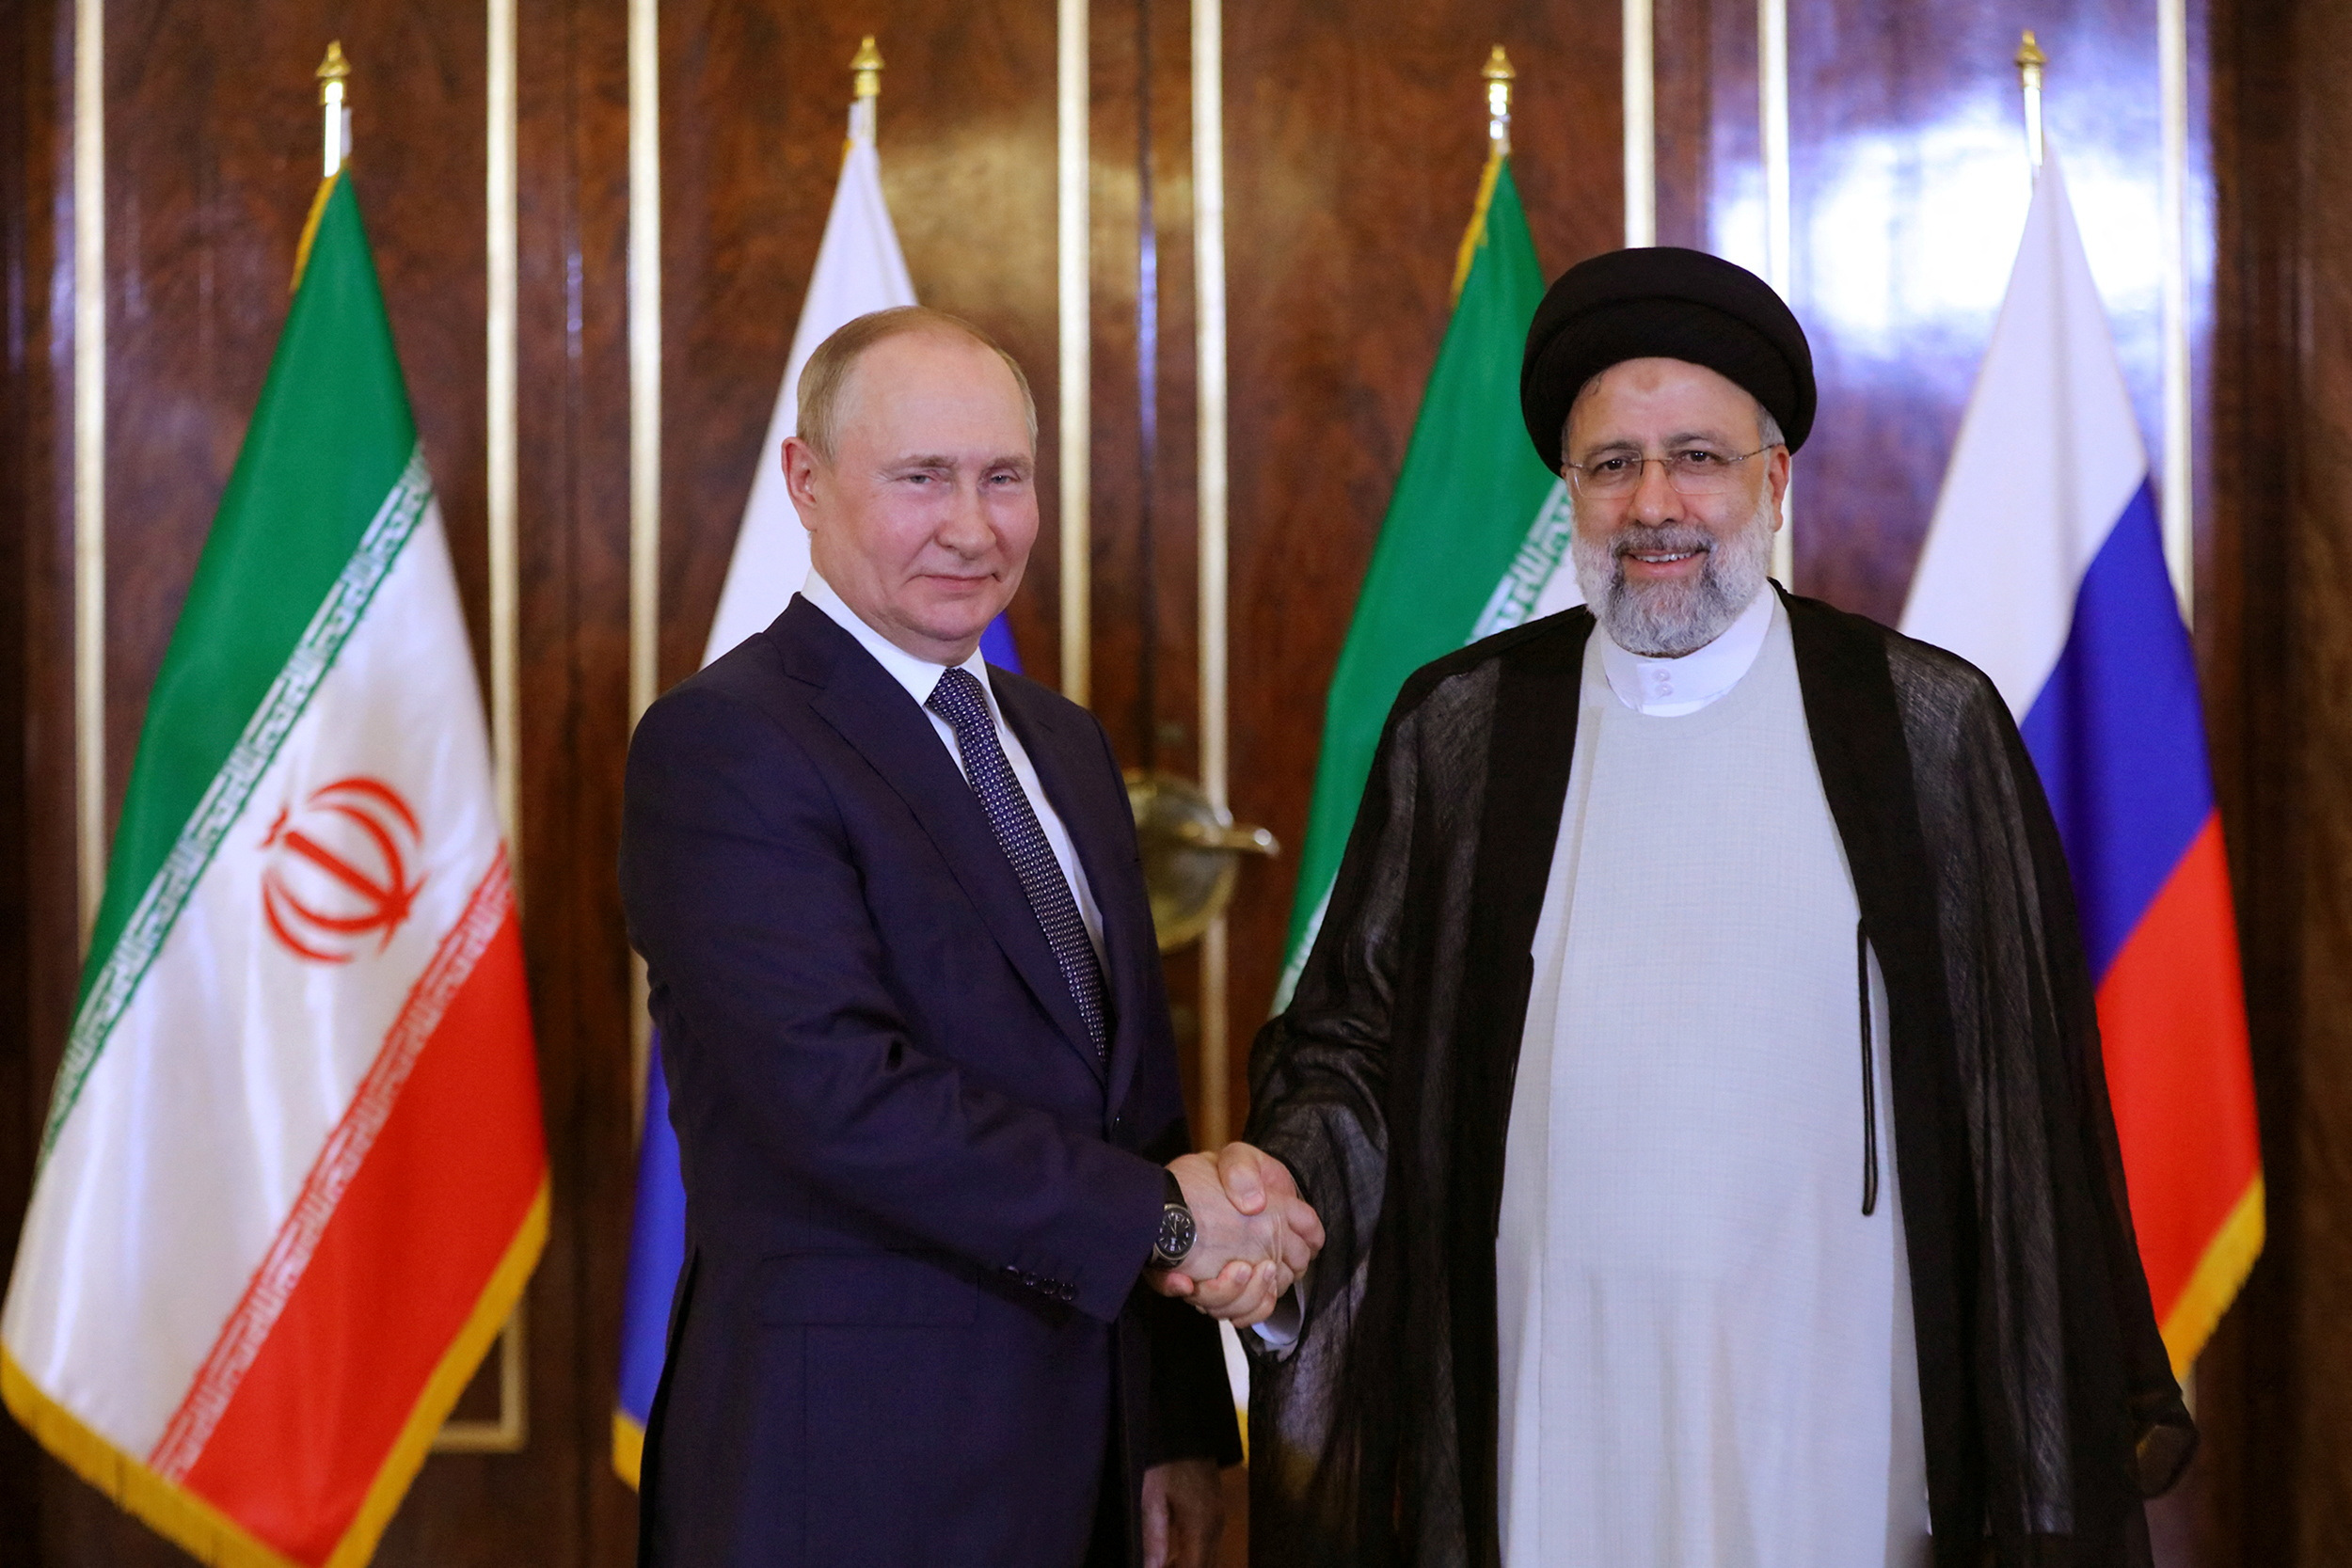 El iraní Ebrahim Raisi y el ruso Vladimir Putin en Teherán, Irán, 19 de julio de 2022 (Reuters)